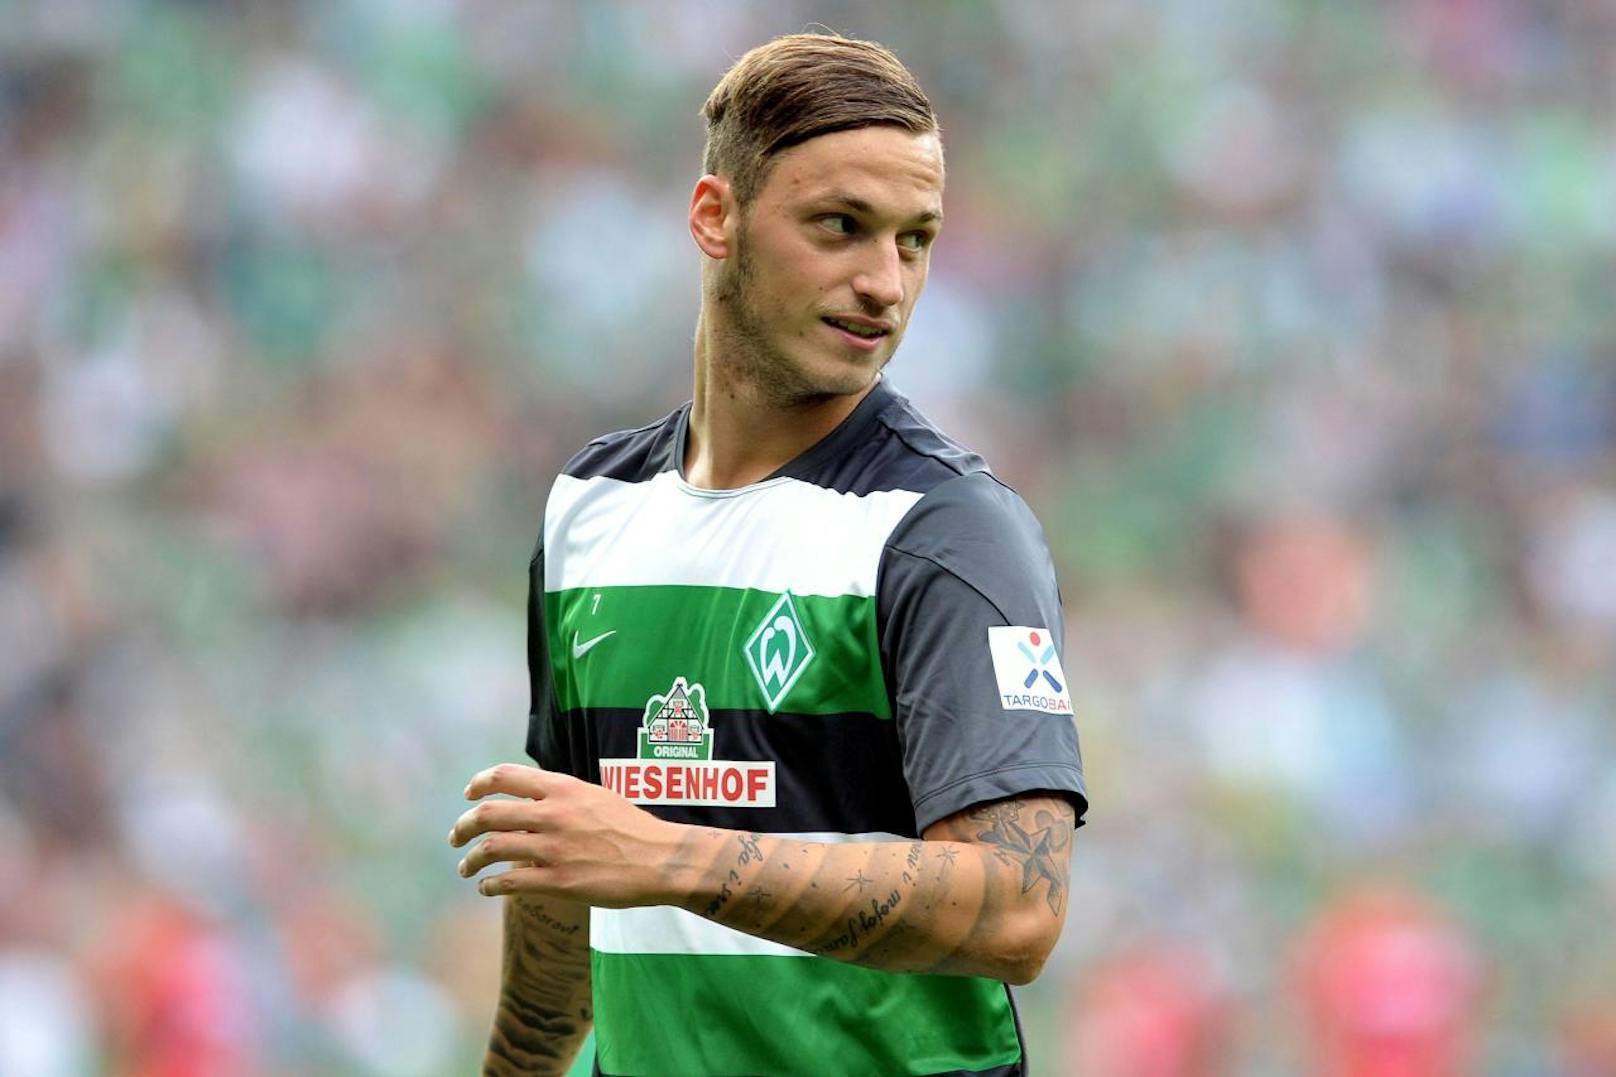 2012 konnte ÖFB-Star Marko Arnautovic zwei Monate lang für seinen damaligen Klub Werder Bremen nicht auflaufen. Der Offensivspieler hatte sich beim Spielen mit seinem Hund schwer am Knie verletzt, sich einen Innenbandriss zugezogen. 